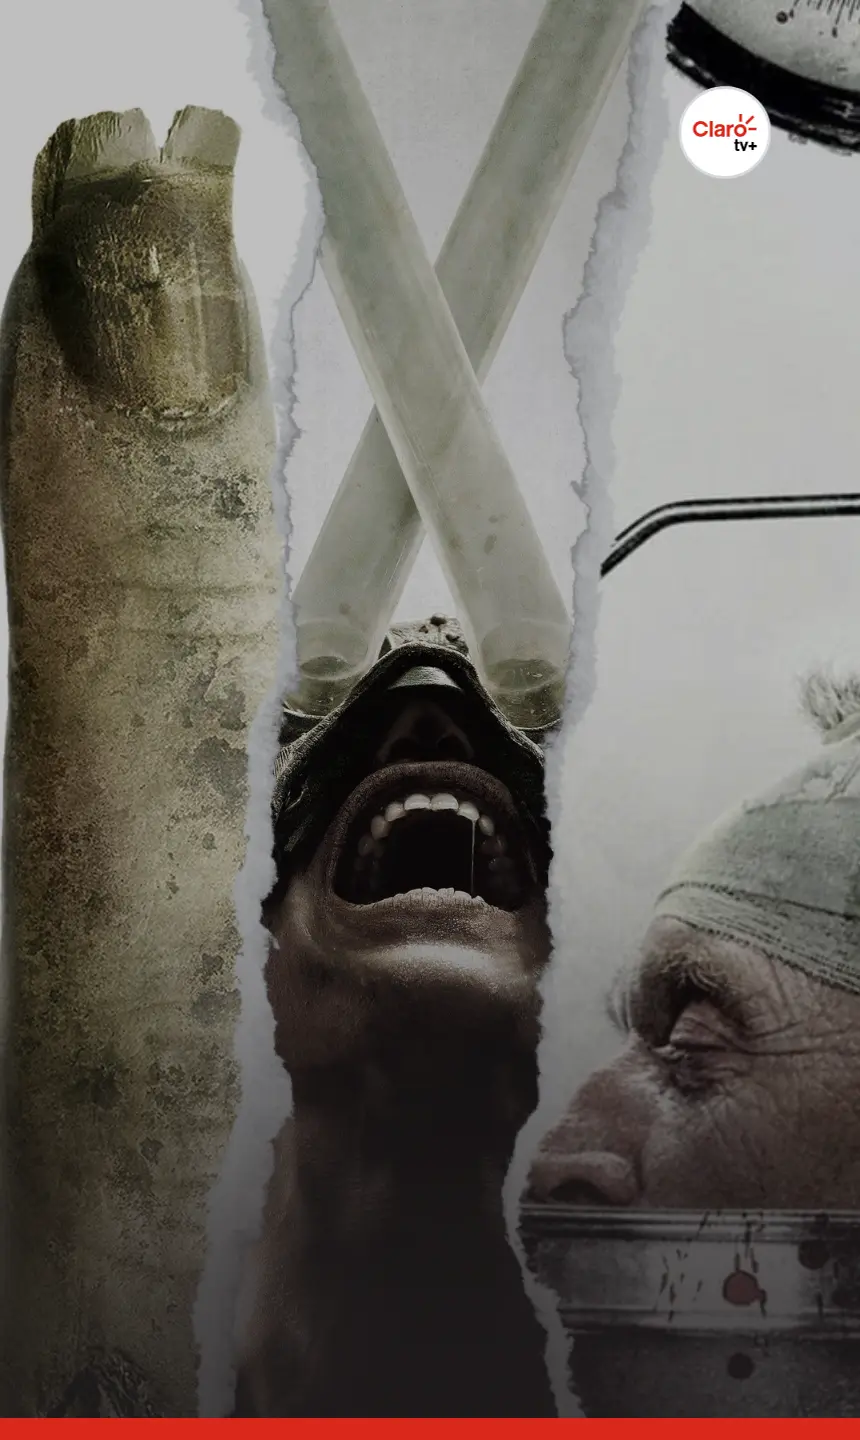 Jogos Mortais X: Confira a primeira imagem de Amanda no filme